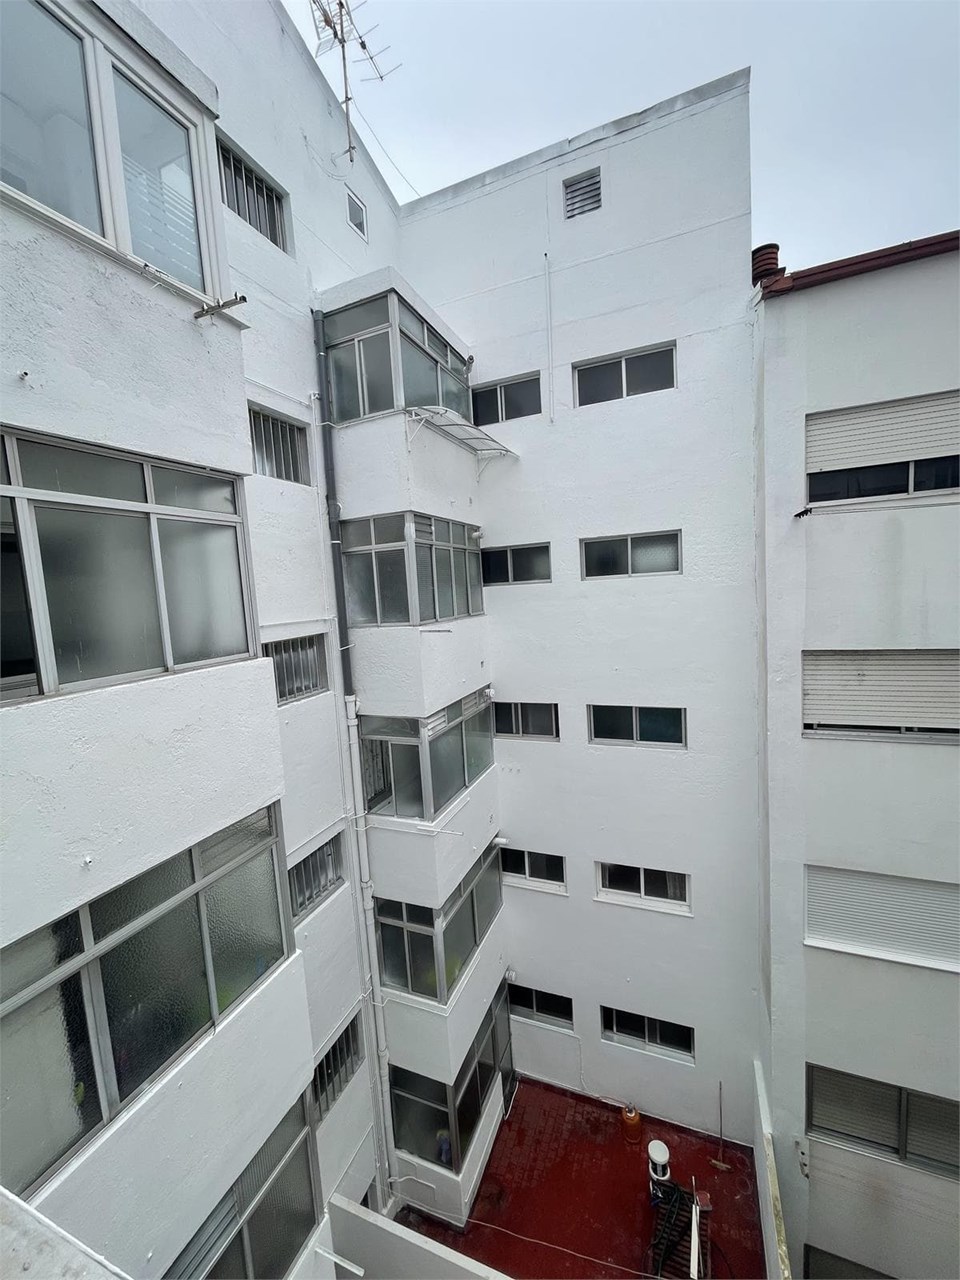 Foto 15 Severo Ochoa, 4 dormitorios, balcón, 2 plazas de garaje. Vistas al mar.